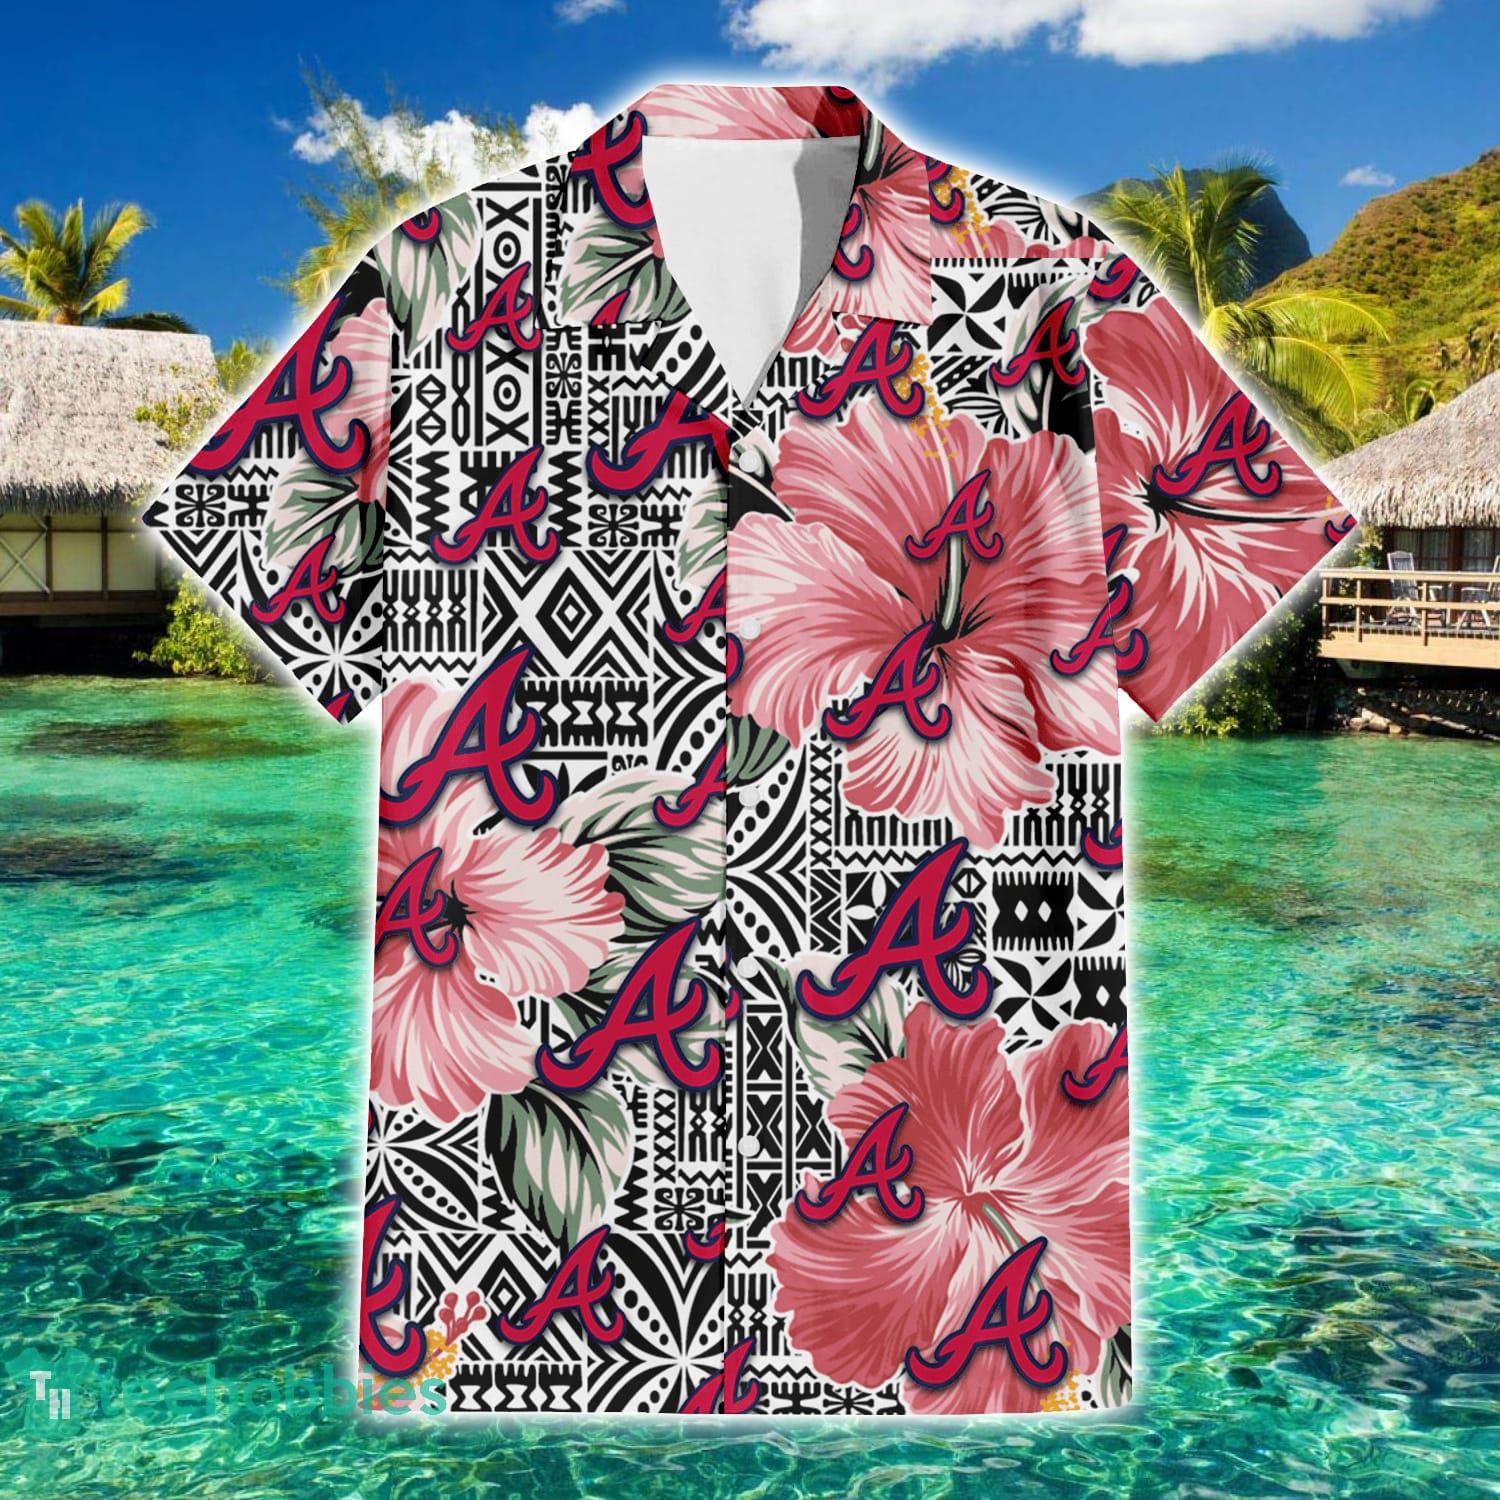 Atlanta Braves MLB Flower Hawaiian Shirt Best Gift For Men And Women Fans -  Freedomdesign